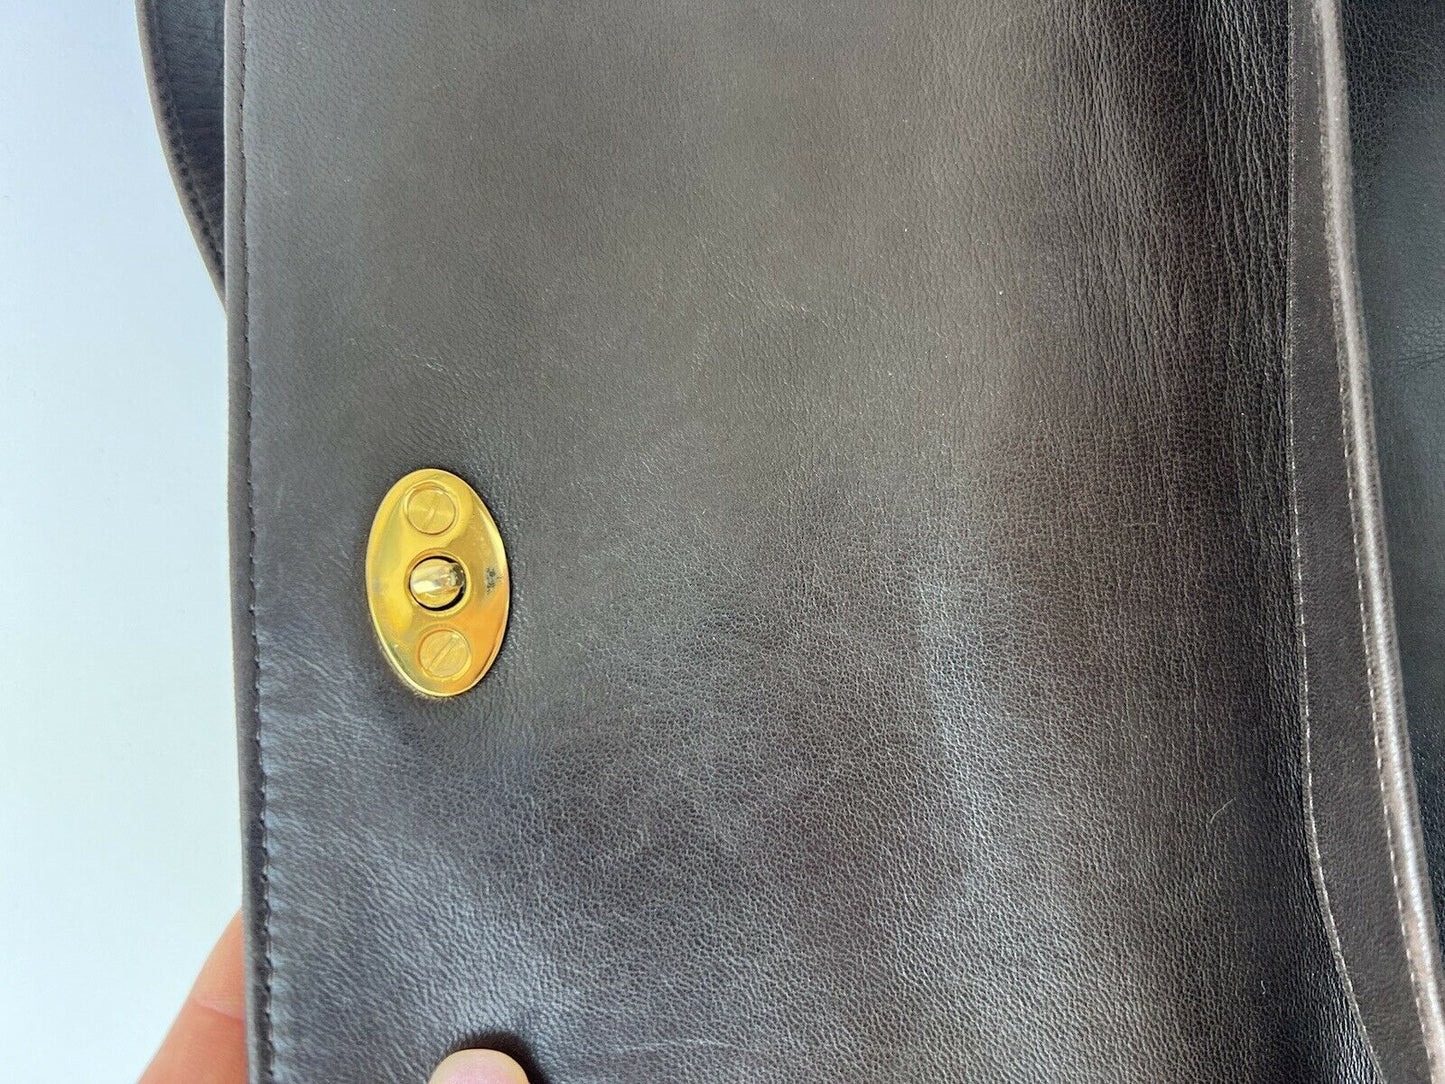 【SOLD OUT】BALLY Shoulder Bag Crossbody Bag Handbag Swede Leather Brown Vintage